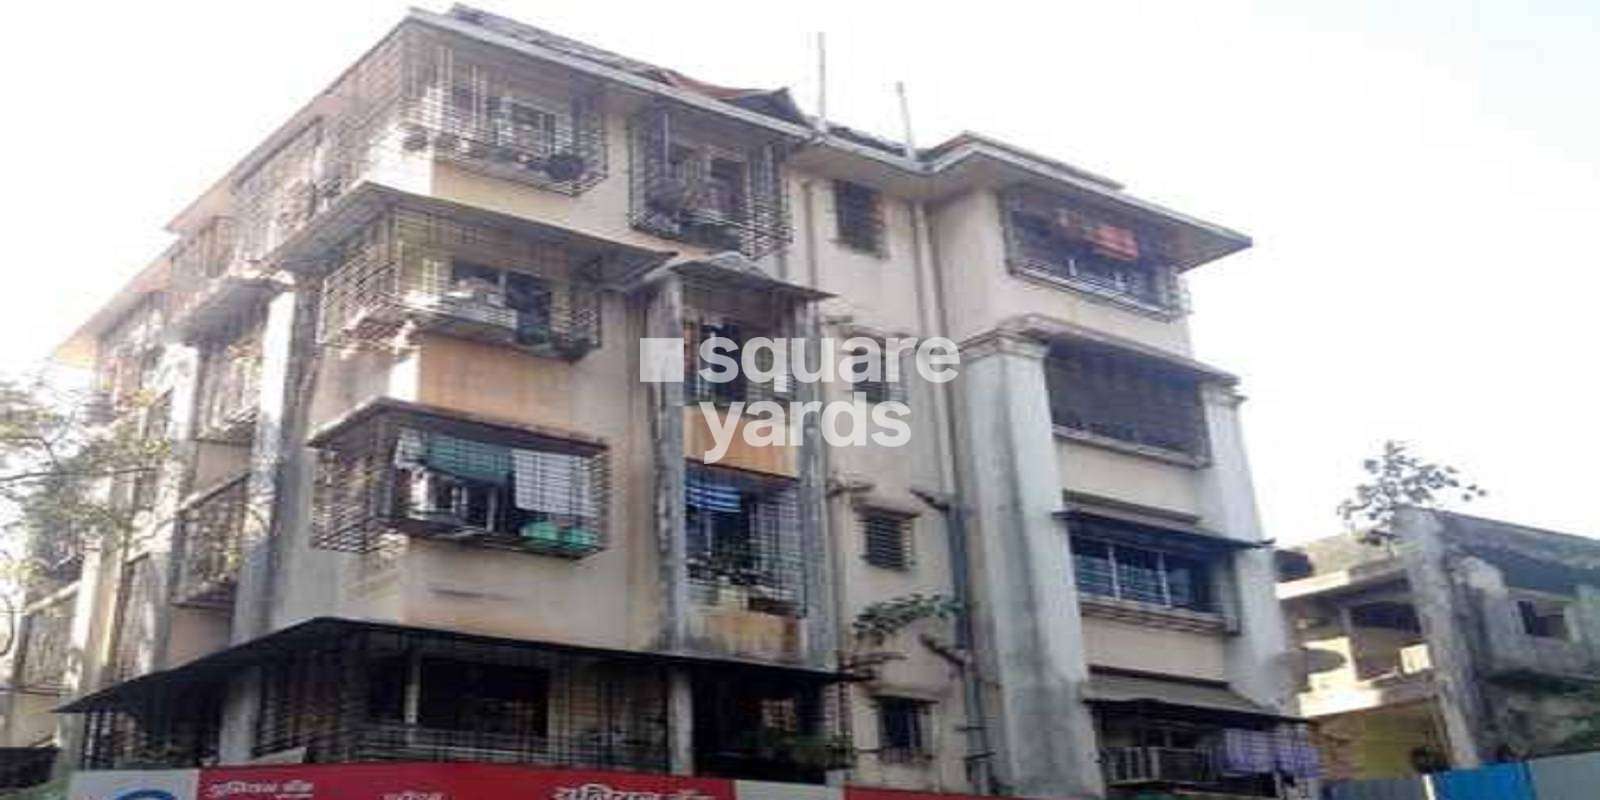 Omkar Jai malhar Apartment Cover Image